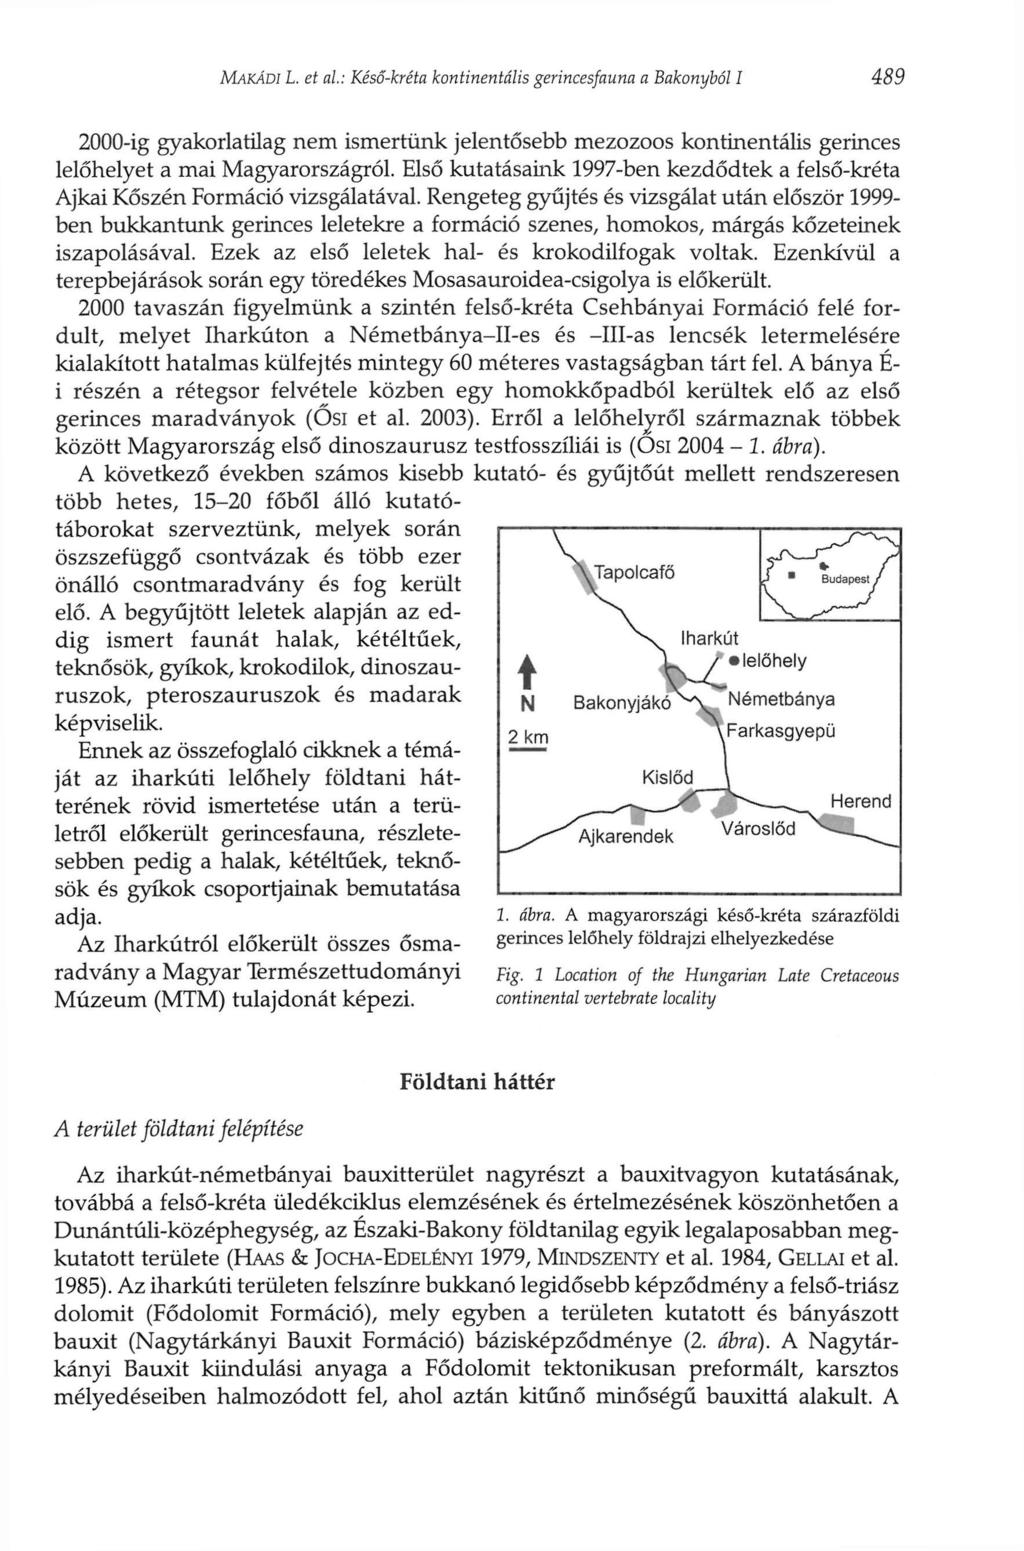 MAKÁDI L. et al: Késő-kréta kontinentális gerincesfauna a Bakonyból I 489 2000-ig gyakorlatilag nem ismertünk jelentősebb mezozoos kontinentális gerinces lelőhelyet a mai Magyarországról.